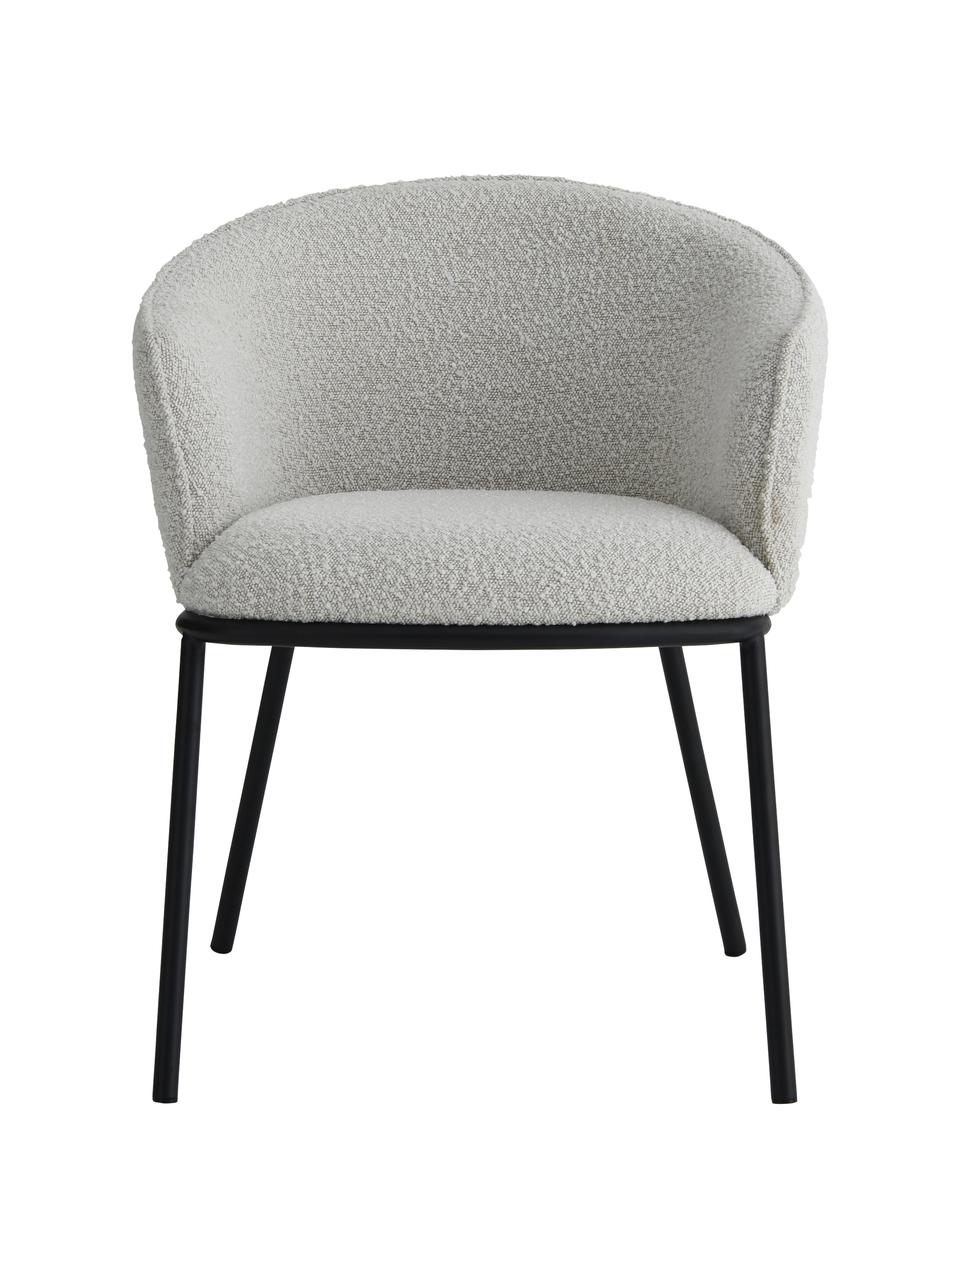 Bouclé fauteuil Feels in grijs, Bekleding: 100% polyester, Poten: gecoat metaal, Bouclé grijs, B 64 x D 60 cm